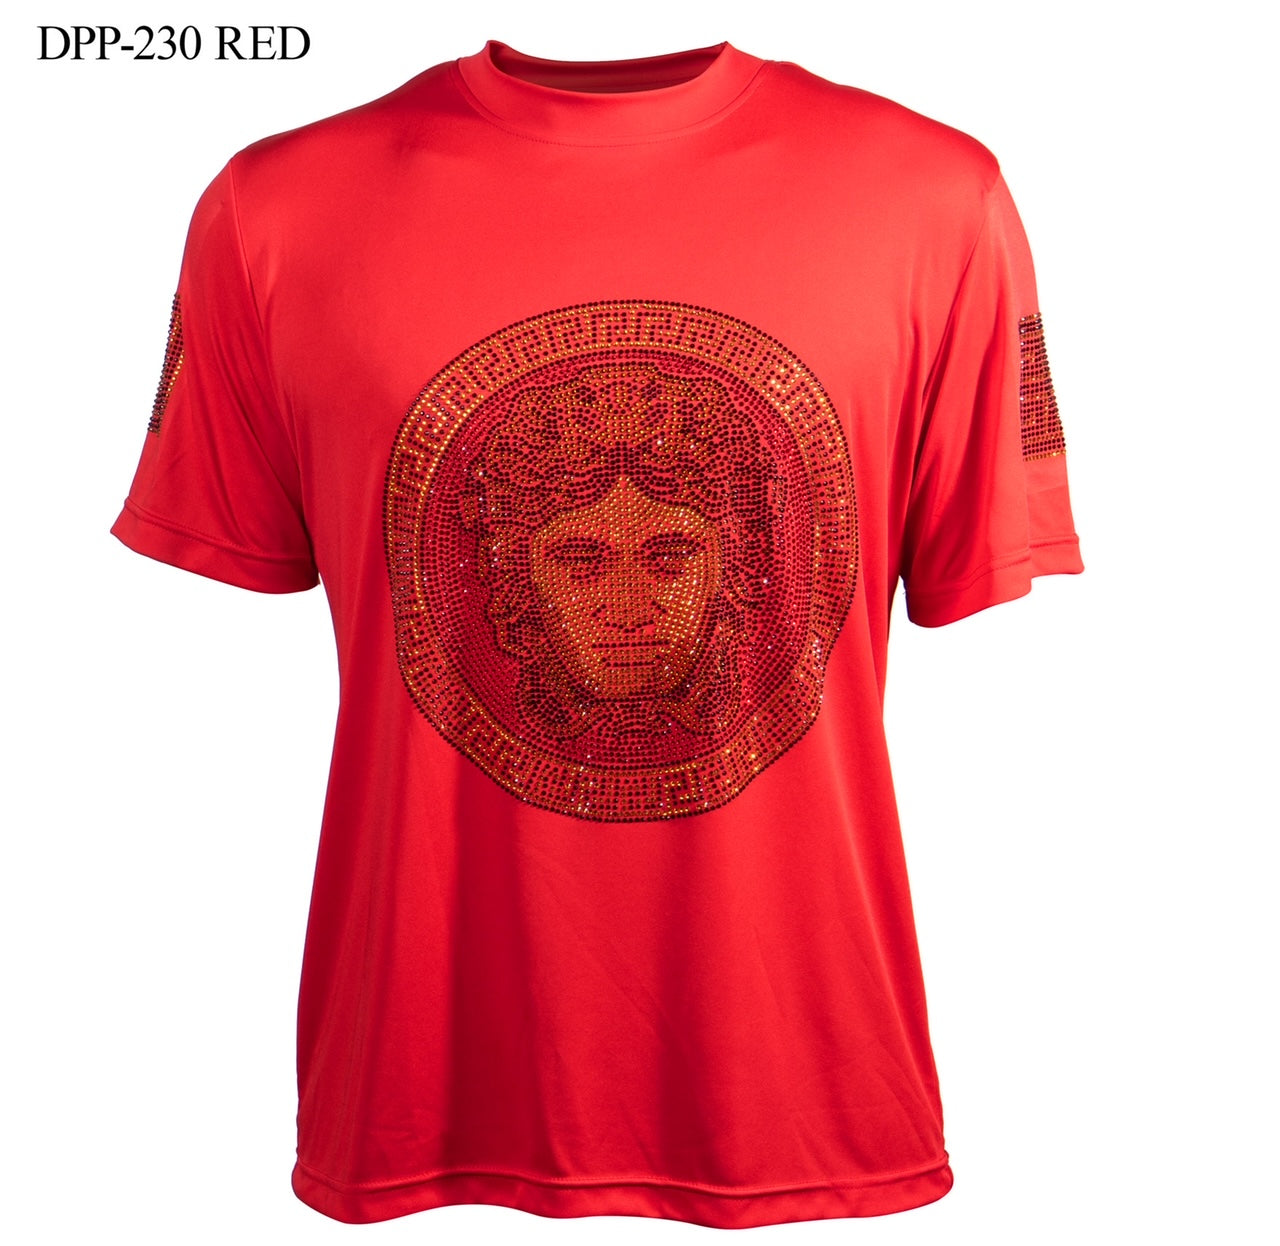 Prestige Greek Head T-Shirt 230